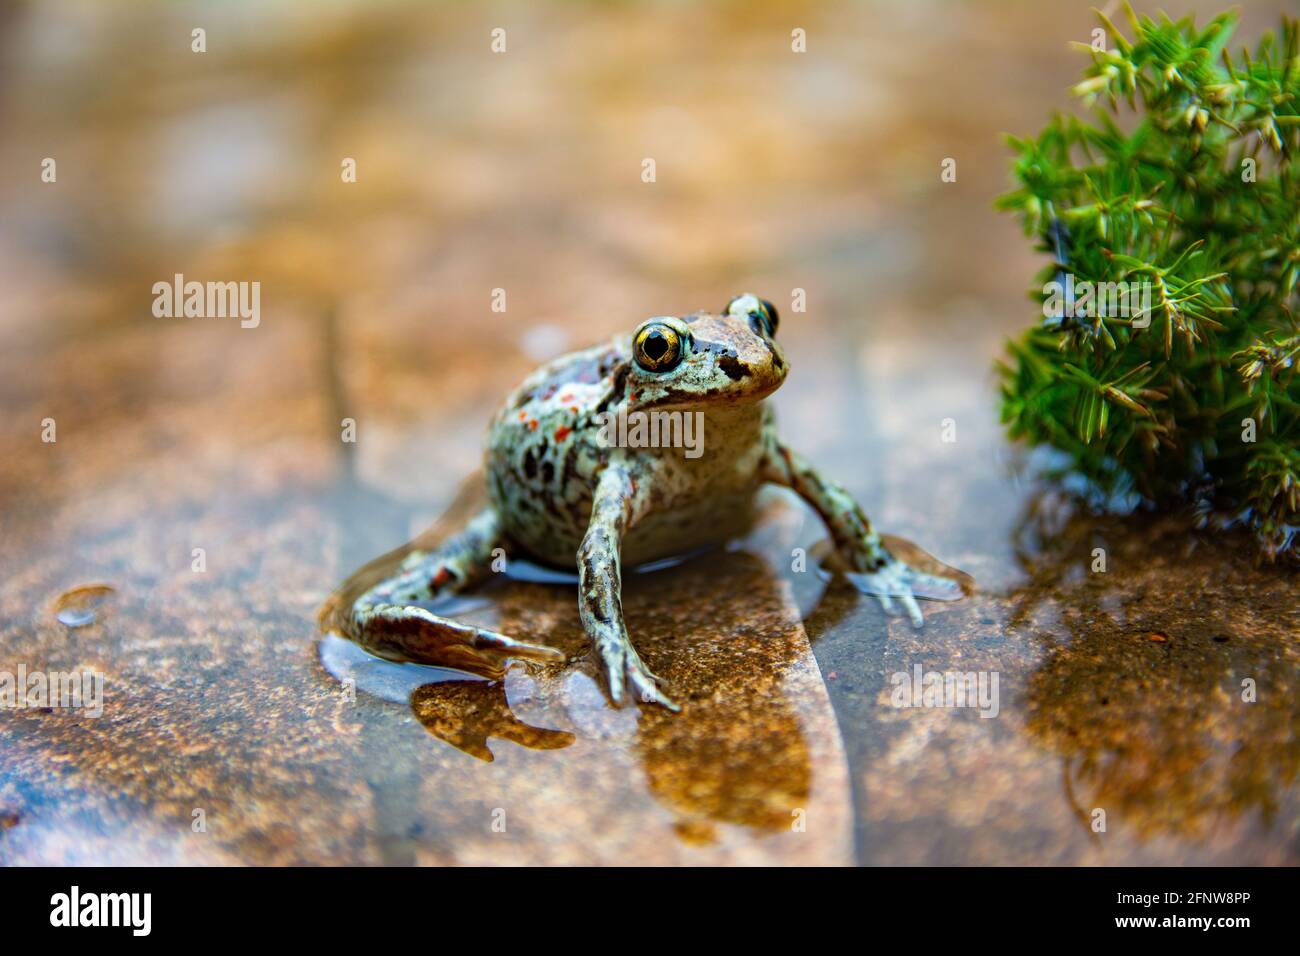 La grenouille brune commune européenne se trouve dans l'eau. Rana temporaria dans l'étang avec fond de pierre. Gros plan Banque D'Images